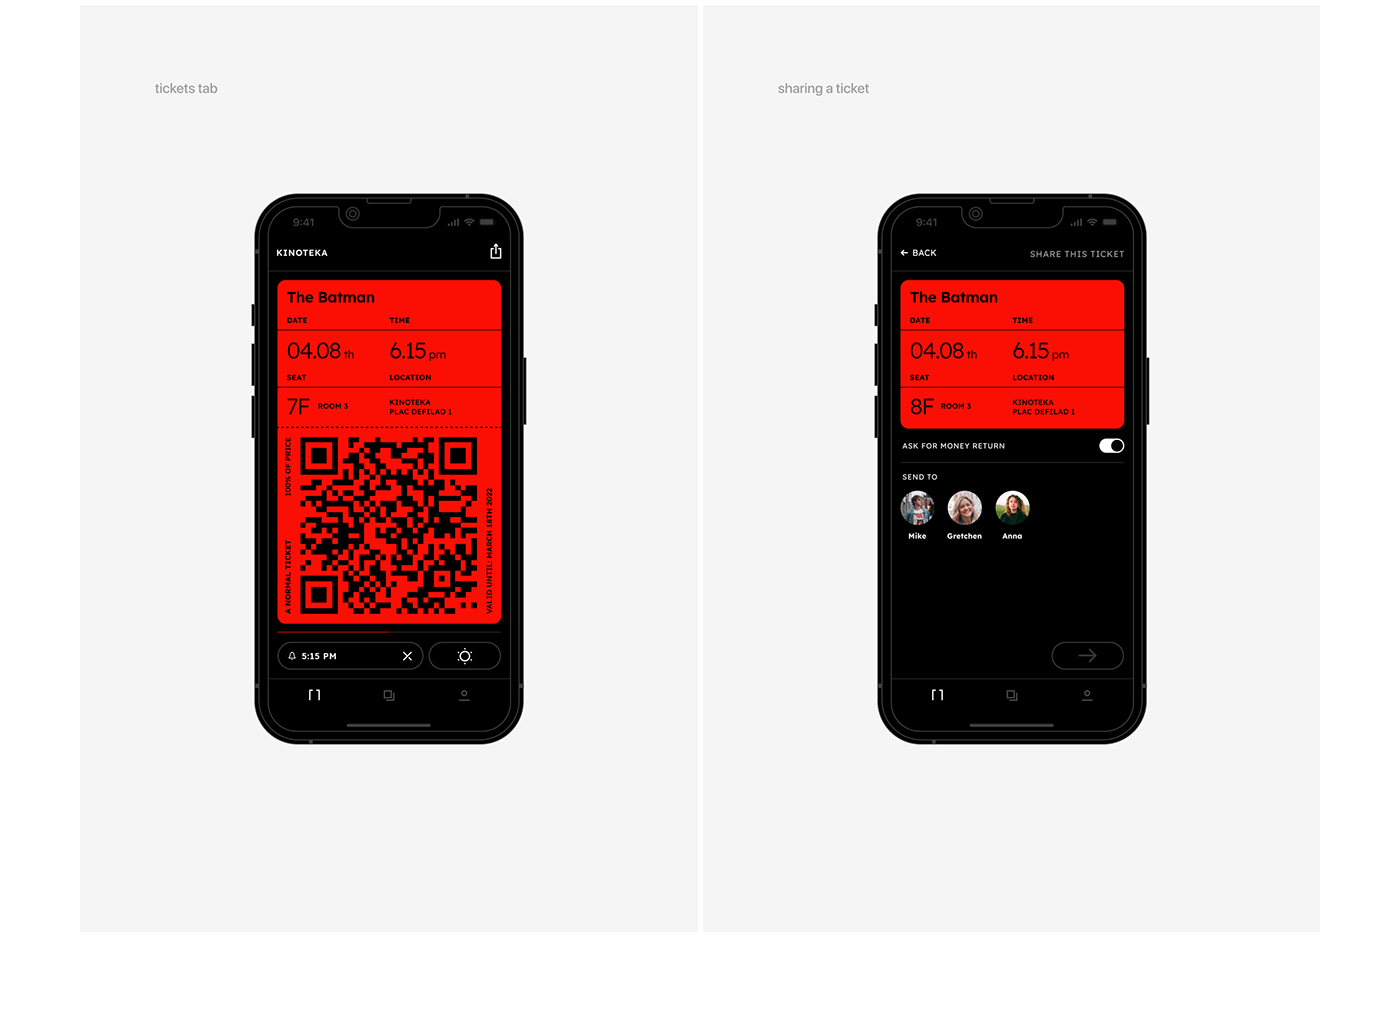 app design Cinema Figma ios Mobile app ui design UI/UX user interface